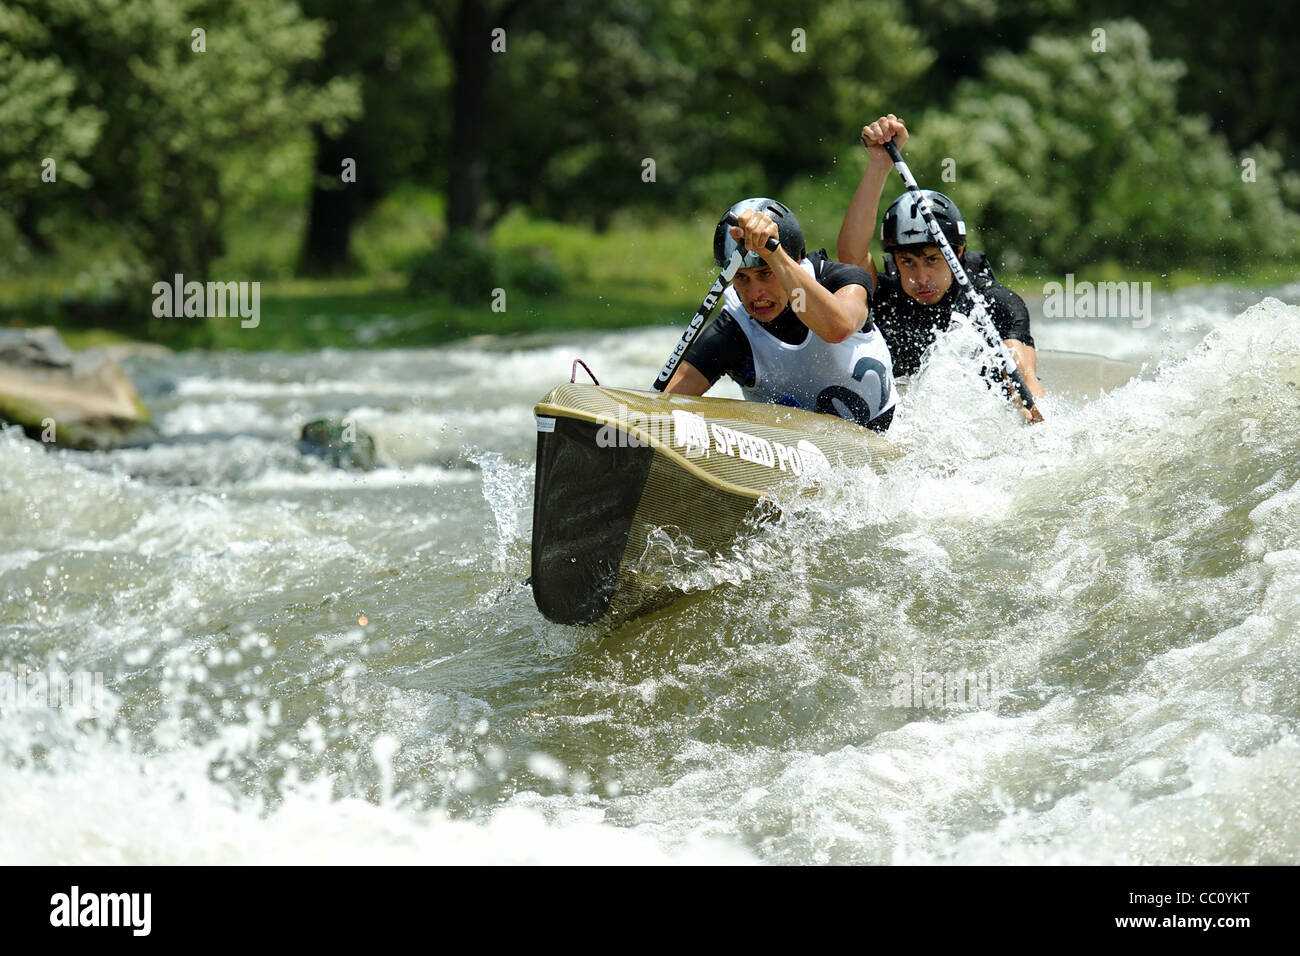 Kayak, European championship. Stock Photo